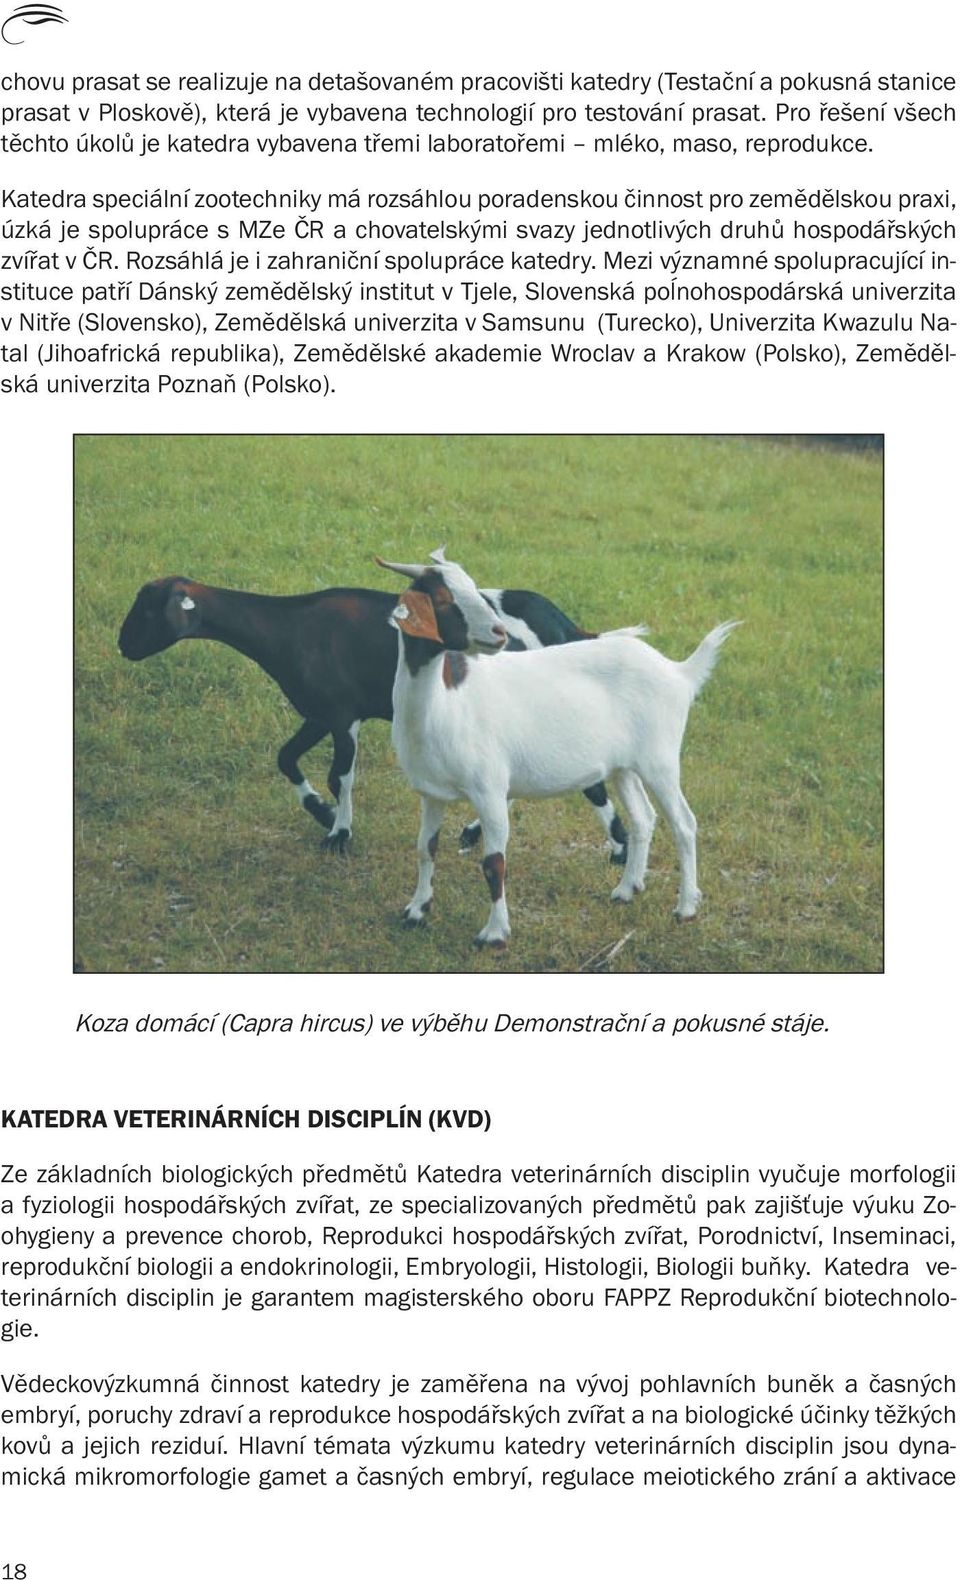 Katedra speciální zootechniky má rozsáhlou poradenskou činnost pro zemědělskou praxi, úzká je spolupráce s MZe ČR a chovatelskými svazy jednotlivých druhů hospodářských zvířat v ČR.